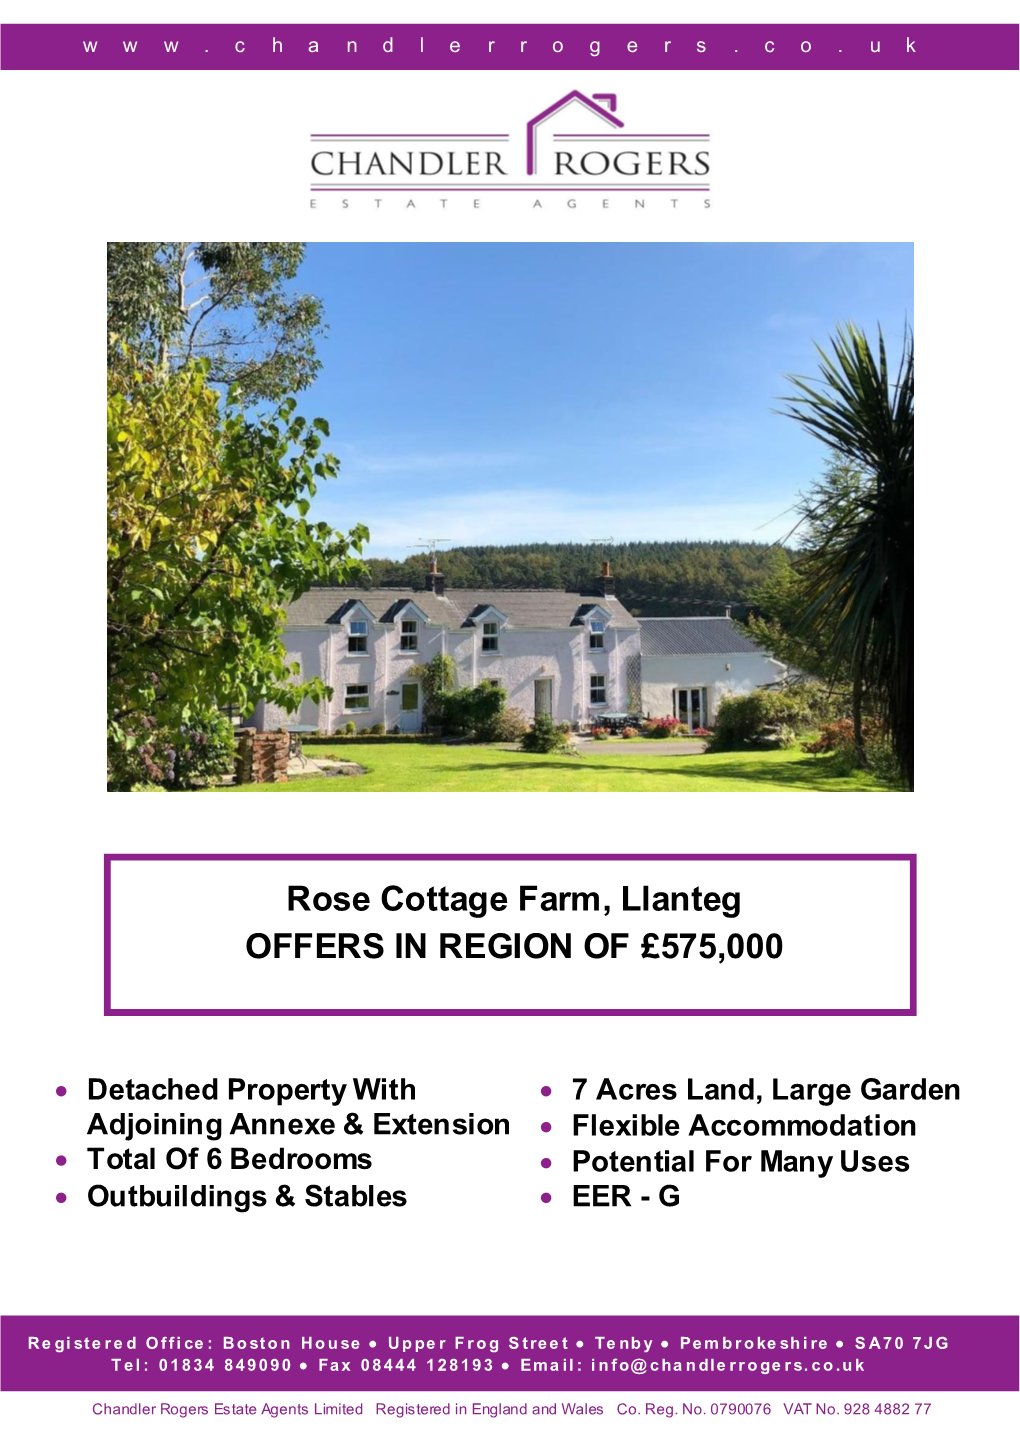 Rose Cottage Farm, Llanteg OFFERS in REGION of £575,000